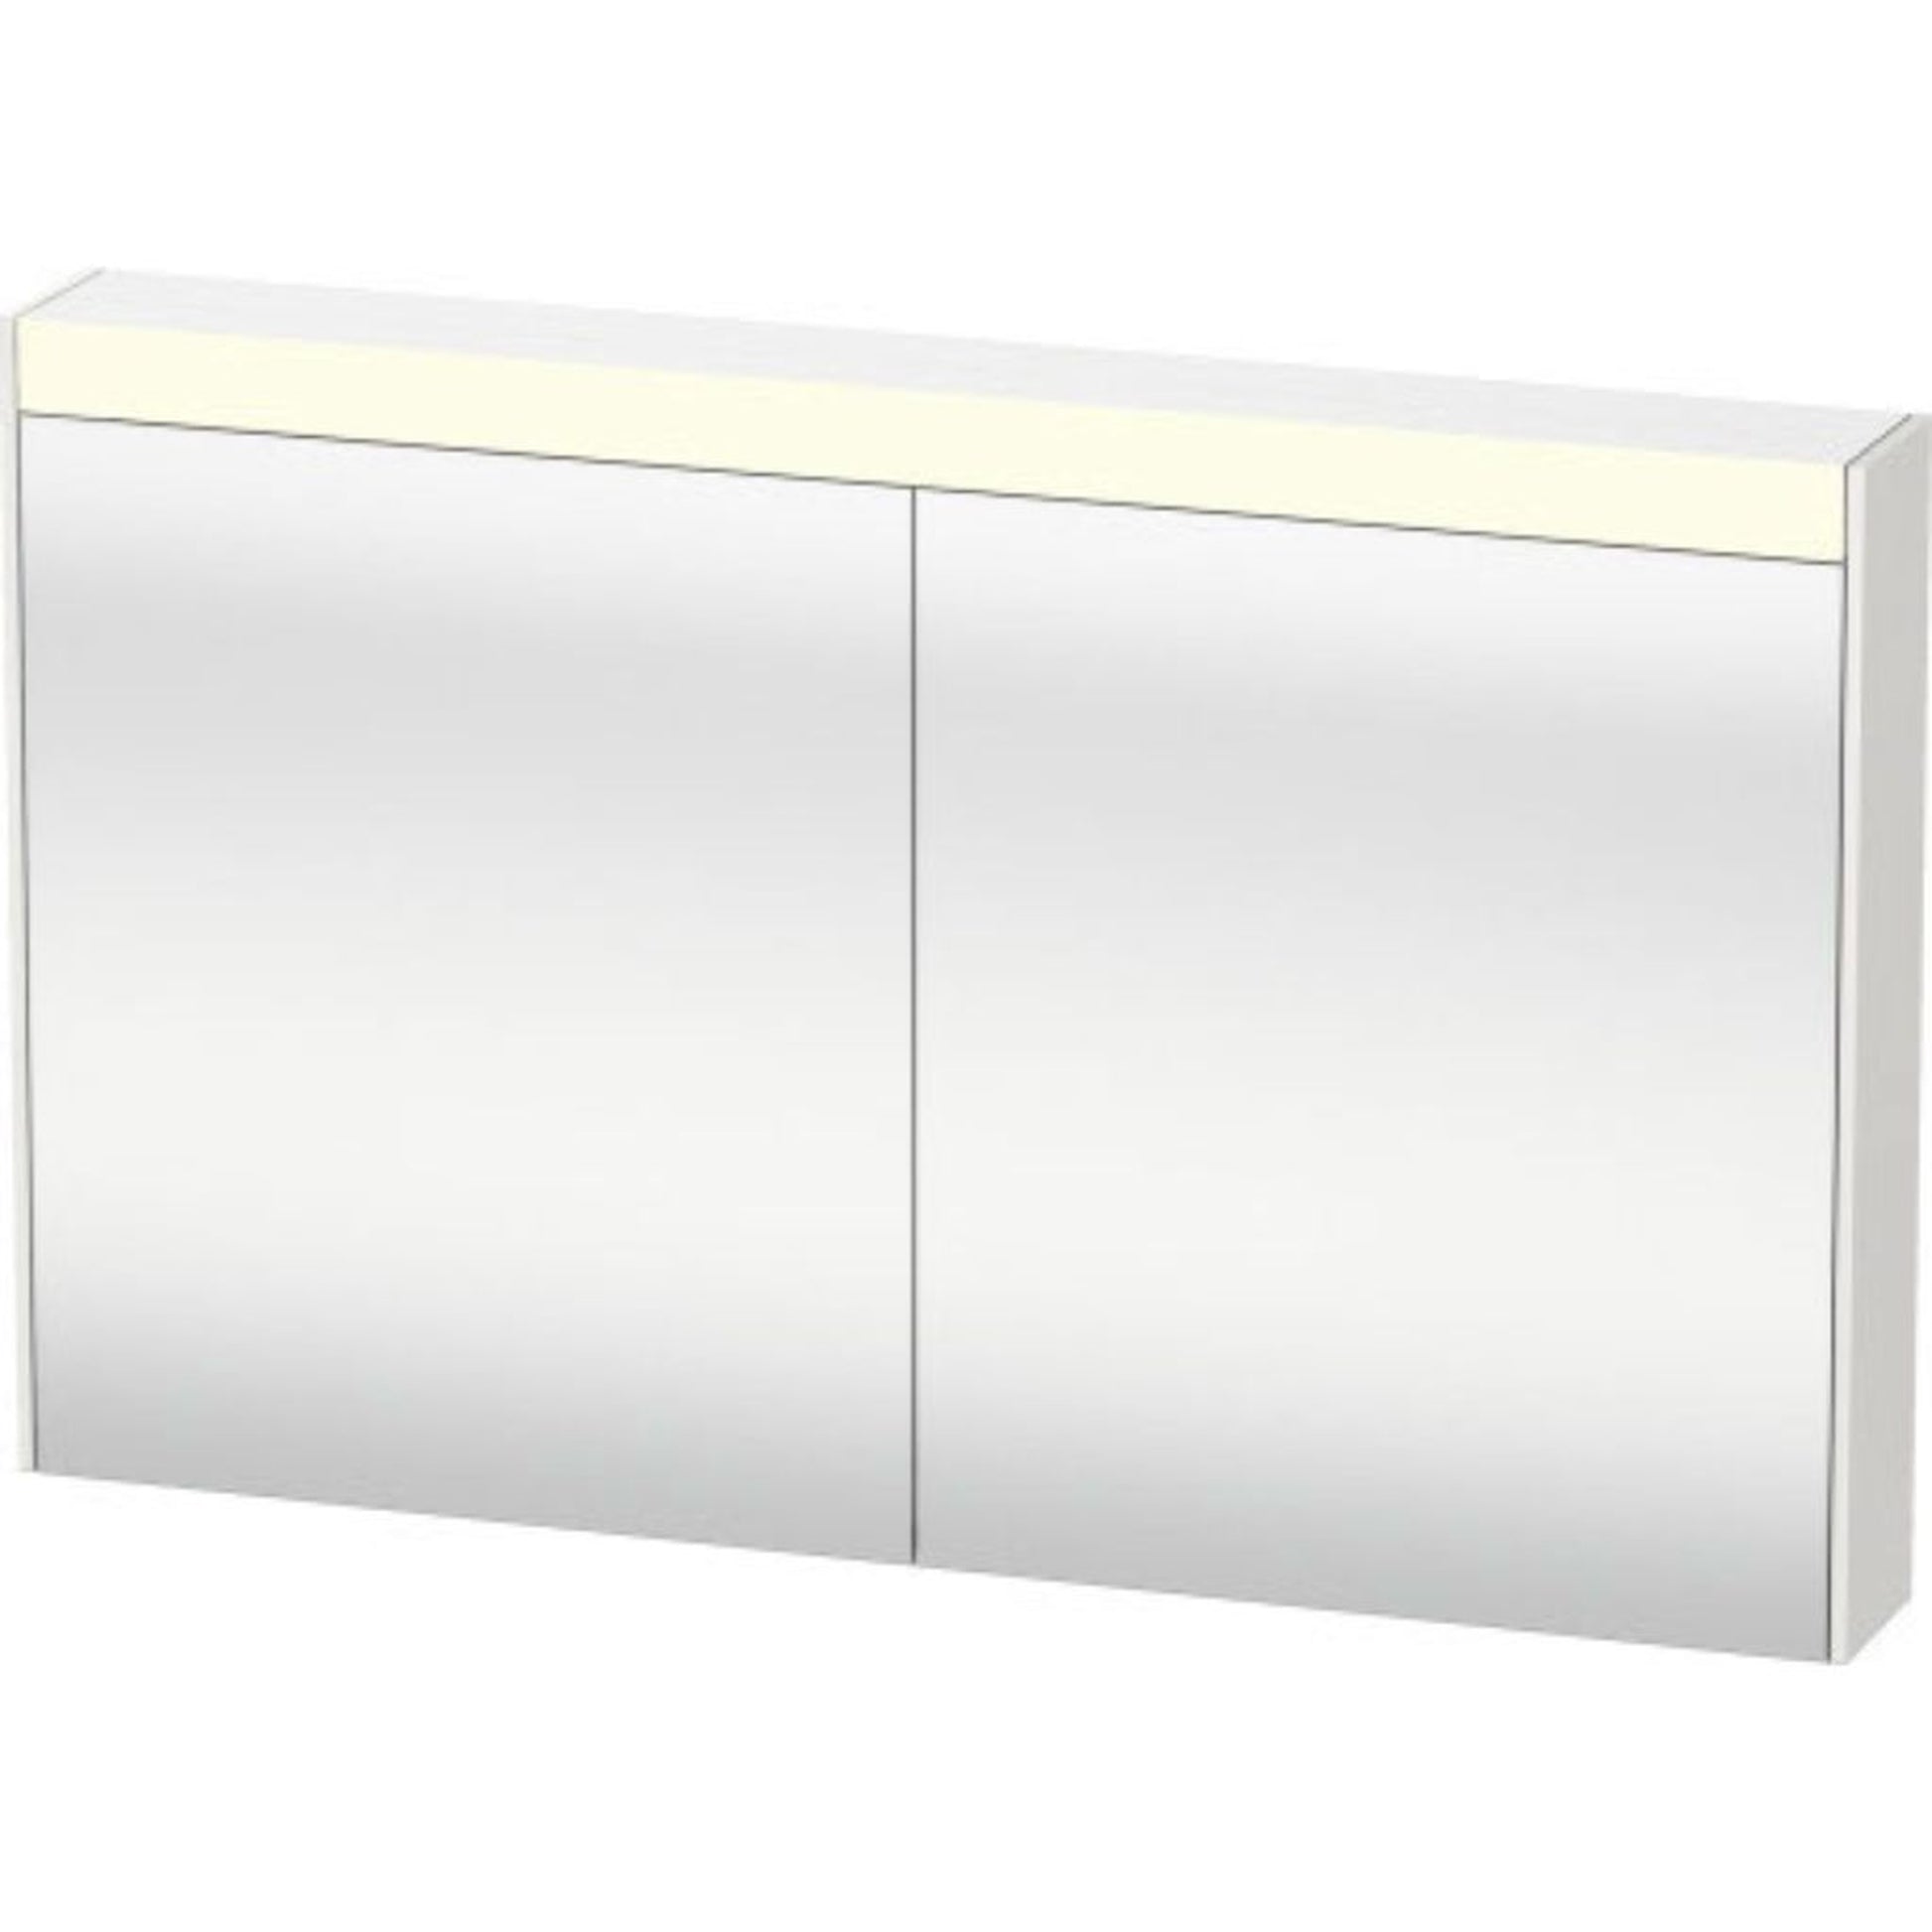 Duravit Brioso 40" x 30" x 6" Mirror Cabinet With Lighting Concrete Grey Matt